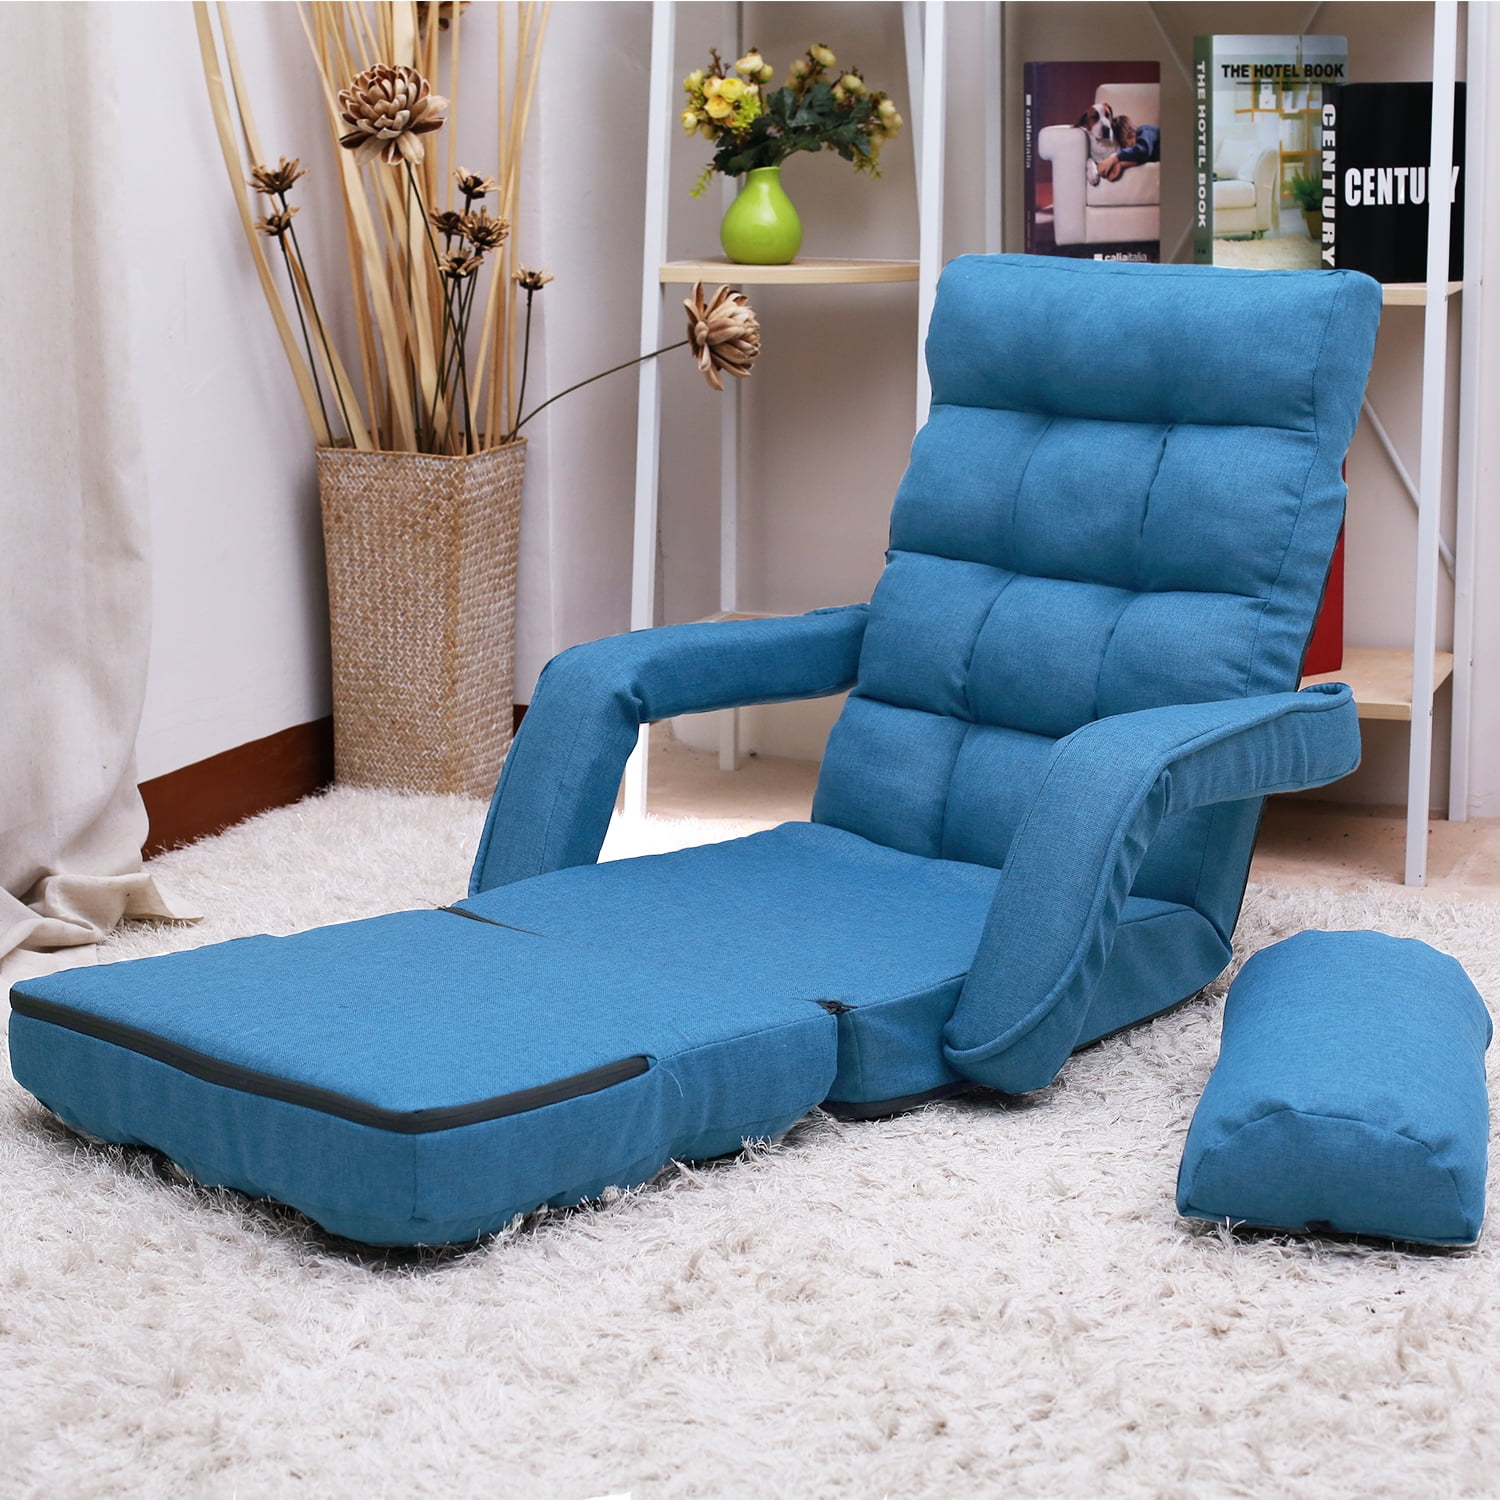 Modern Floor Couch Chair Set, Foldable Floor Cushions